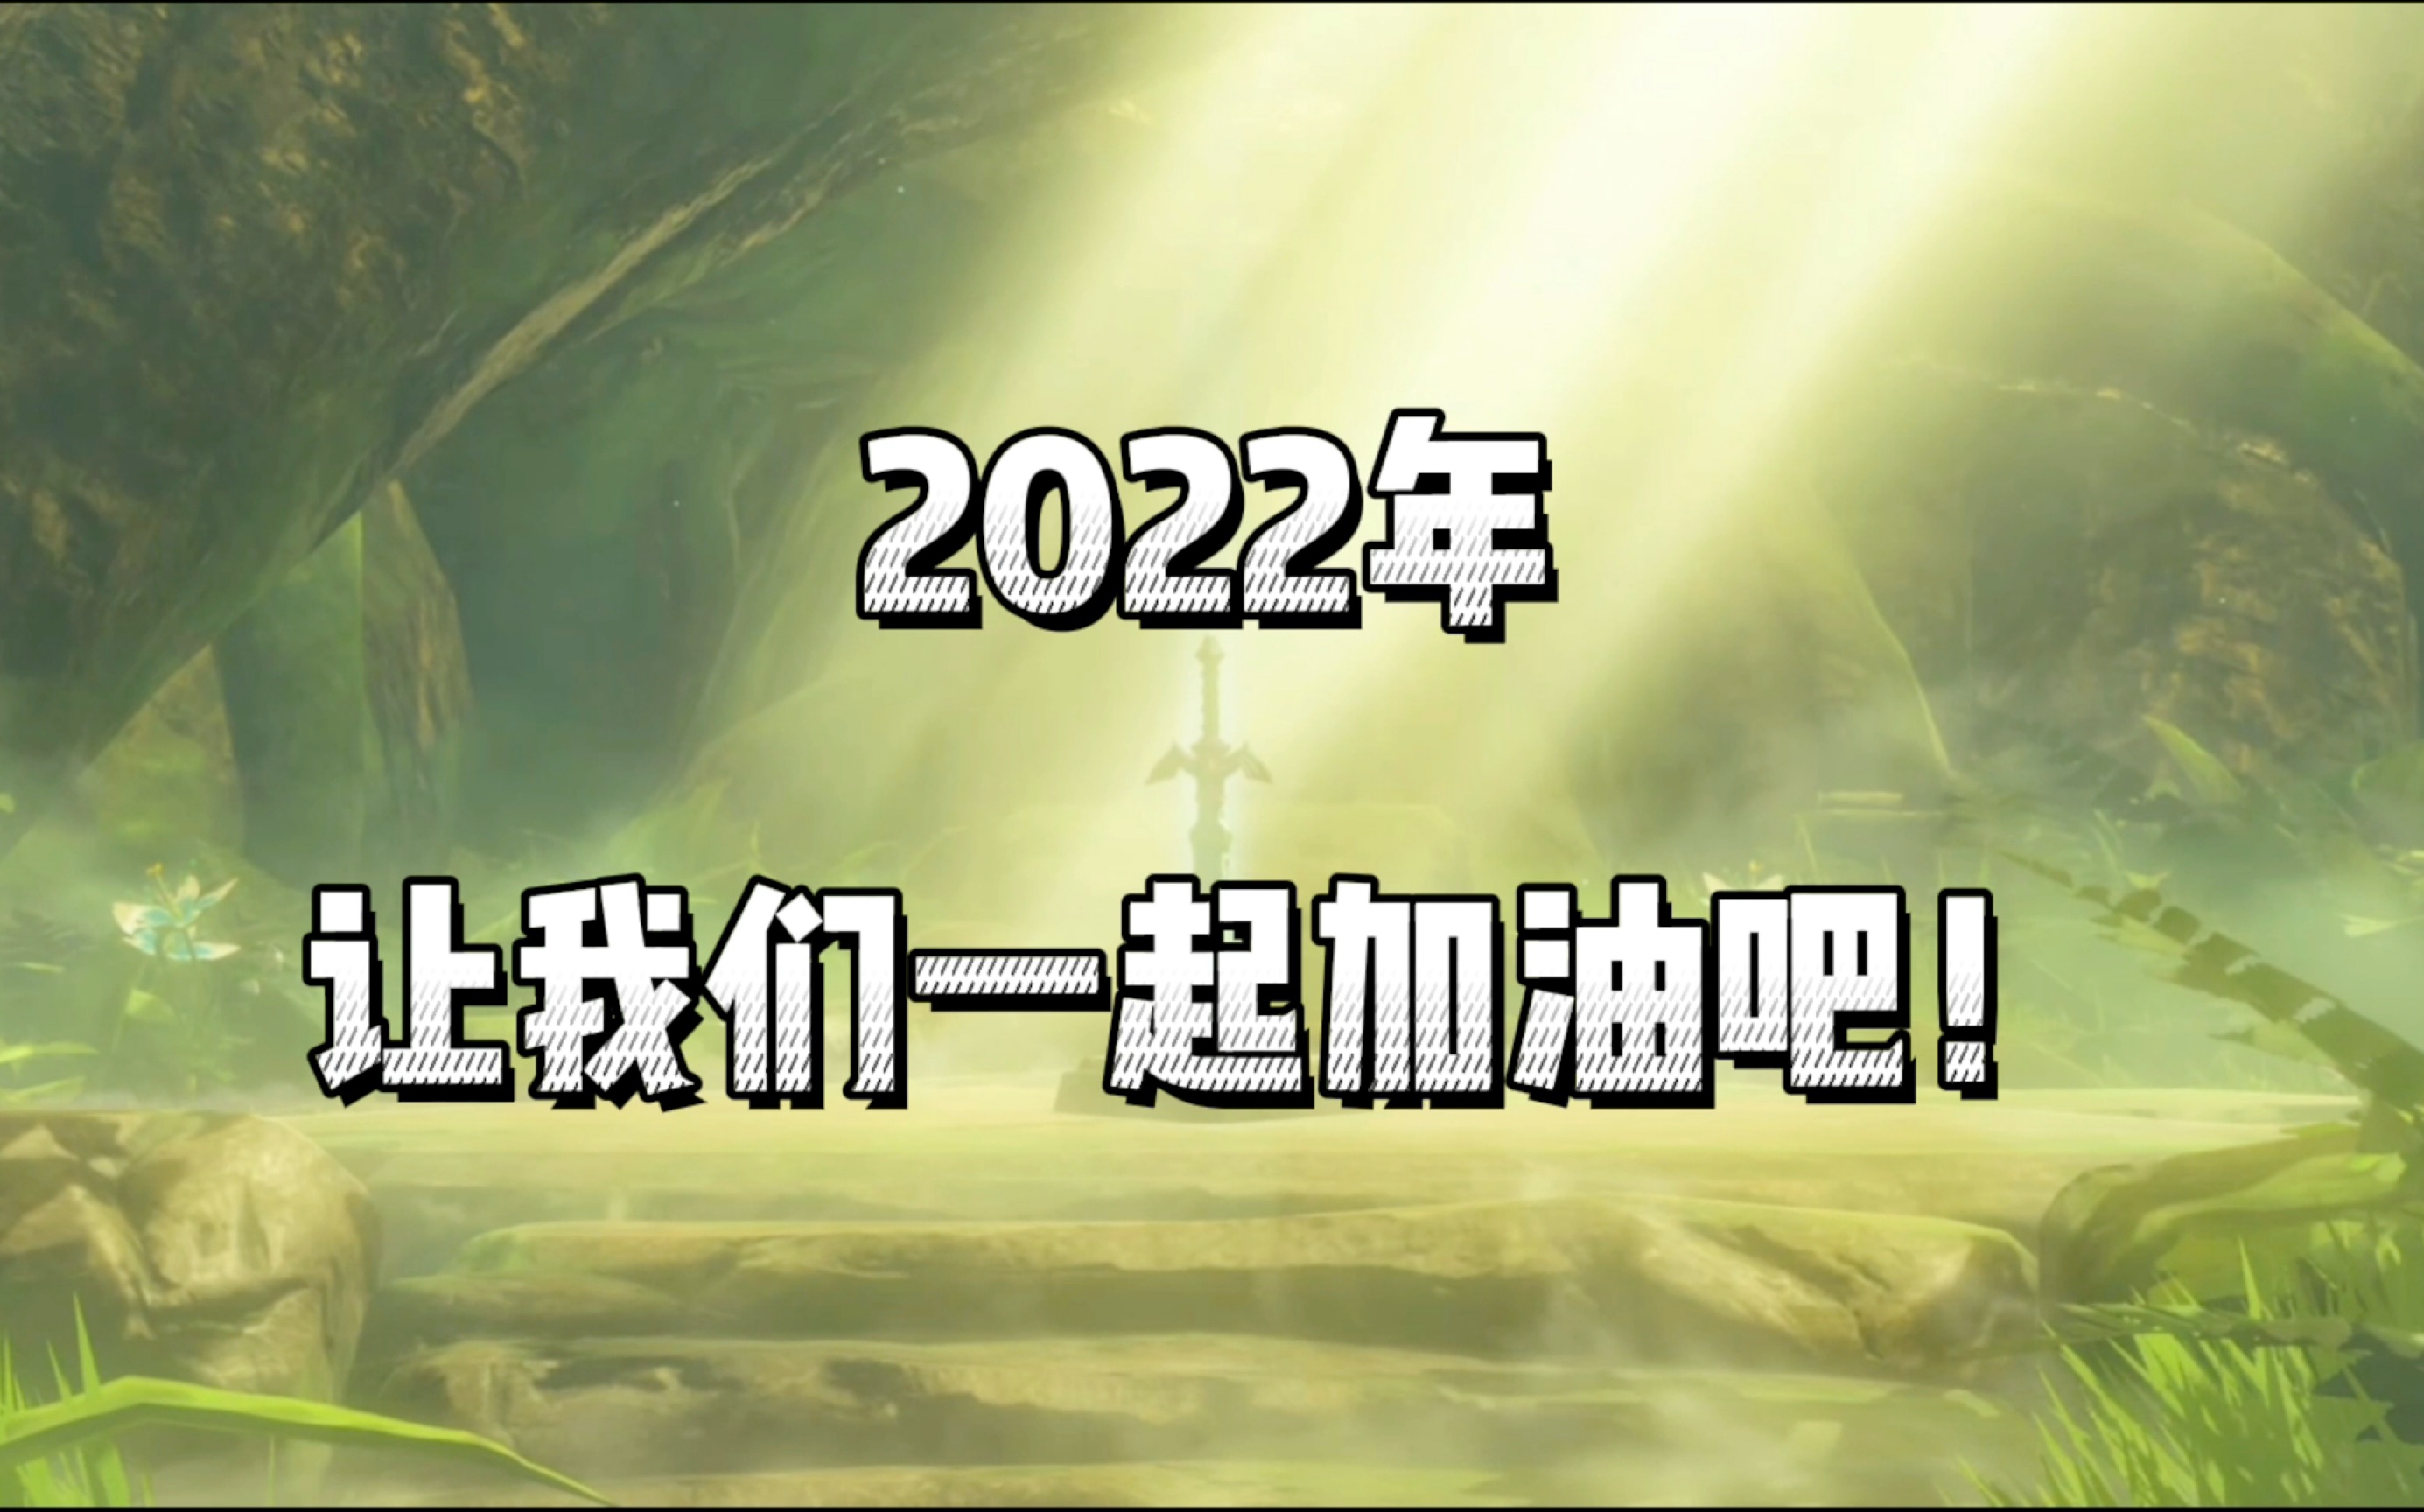 【塞尔达传说】2022年,让我们一起加油吧!